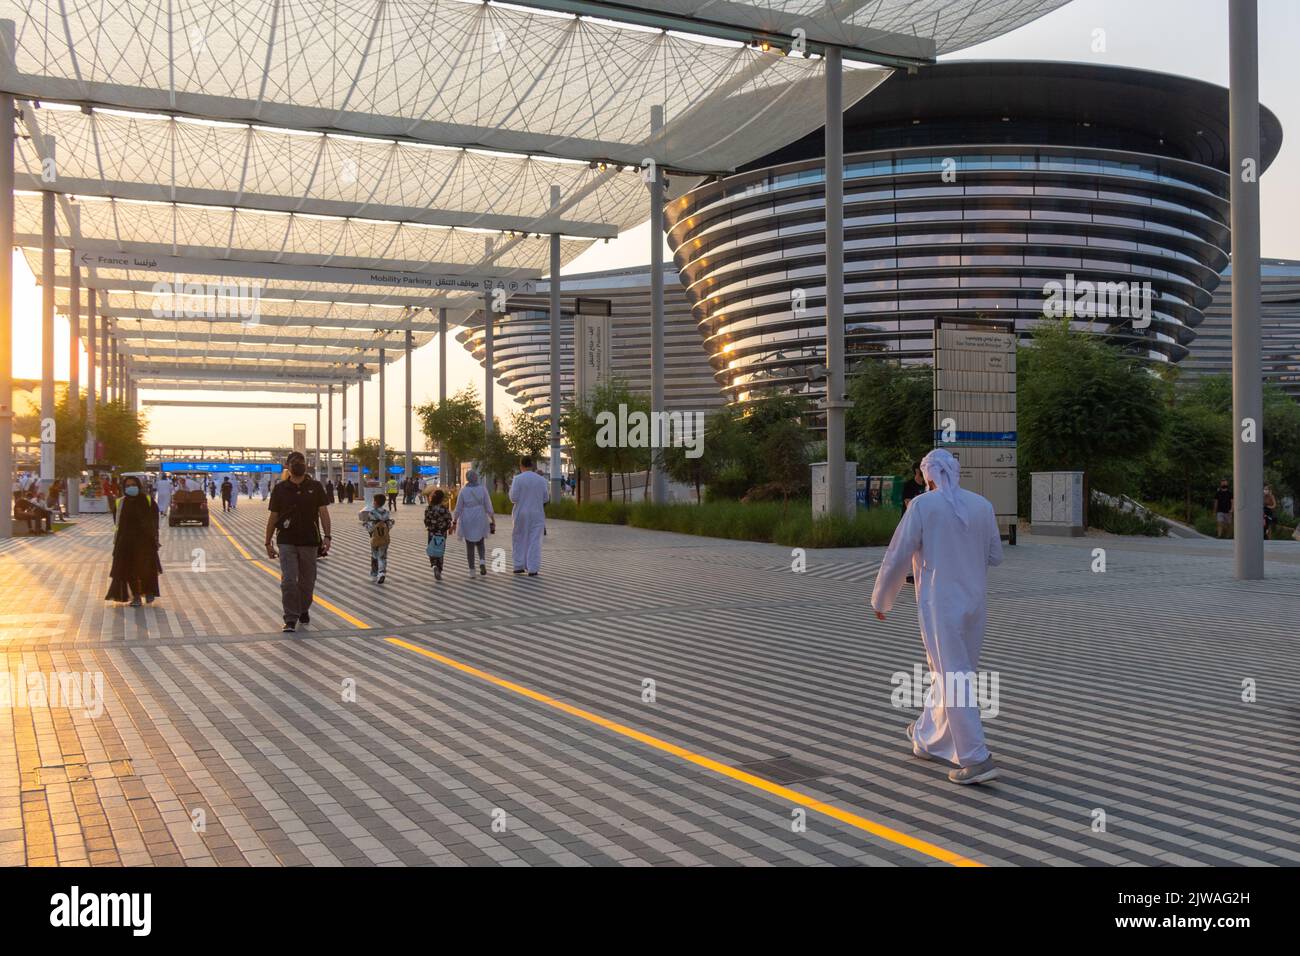 VAE, Dubai - 30. November 2021: Ausstellung EXPO 2020. Menschen gehen zwischen Pavillons entlang. Ausstellungshalle Mobilität in den Abendstrahlen des Sonnenuntergangs. Stockfoto